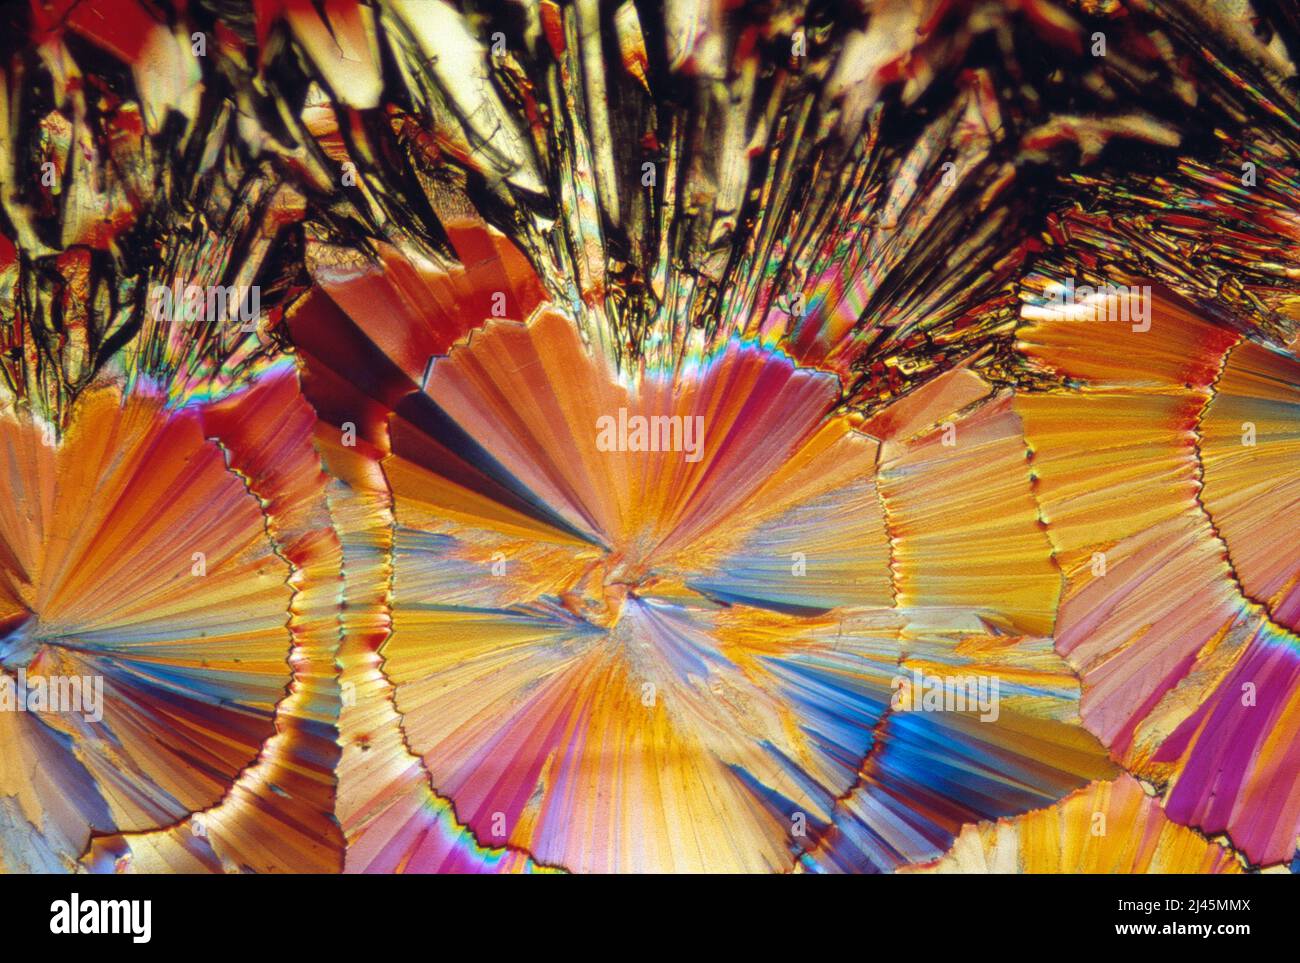 Microscopía. Cristales de azúcar fotografiados en luz polarizada. Foto de stock